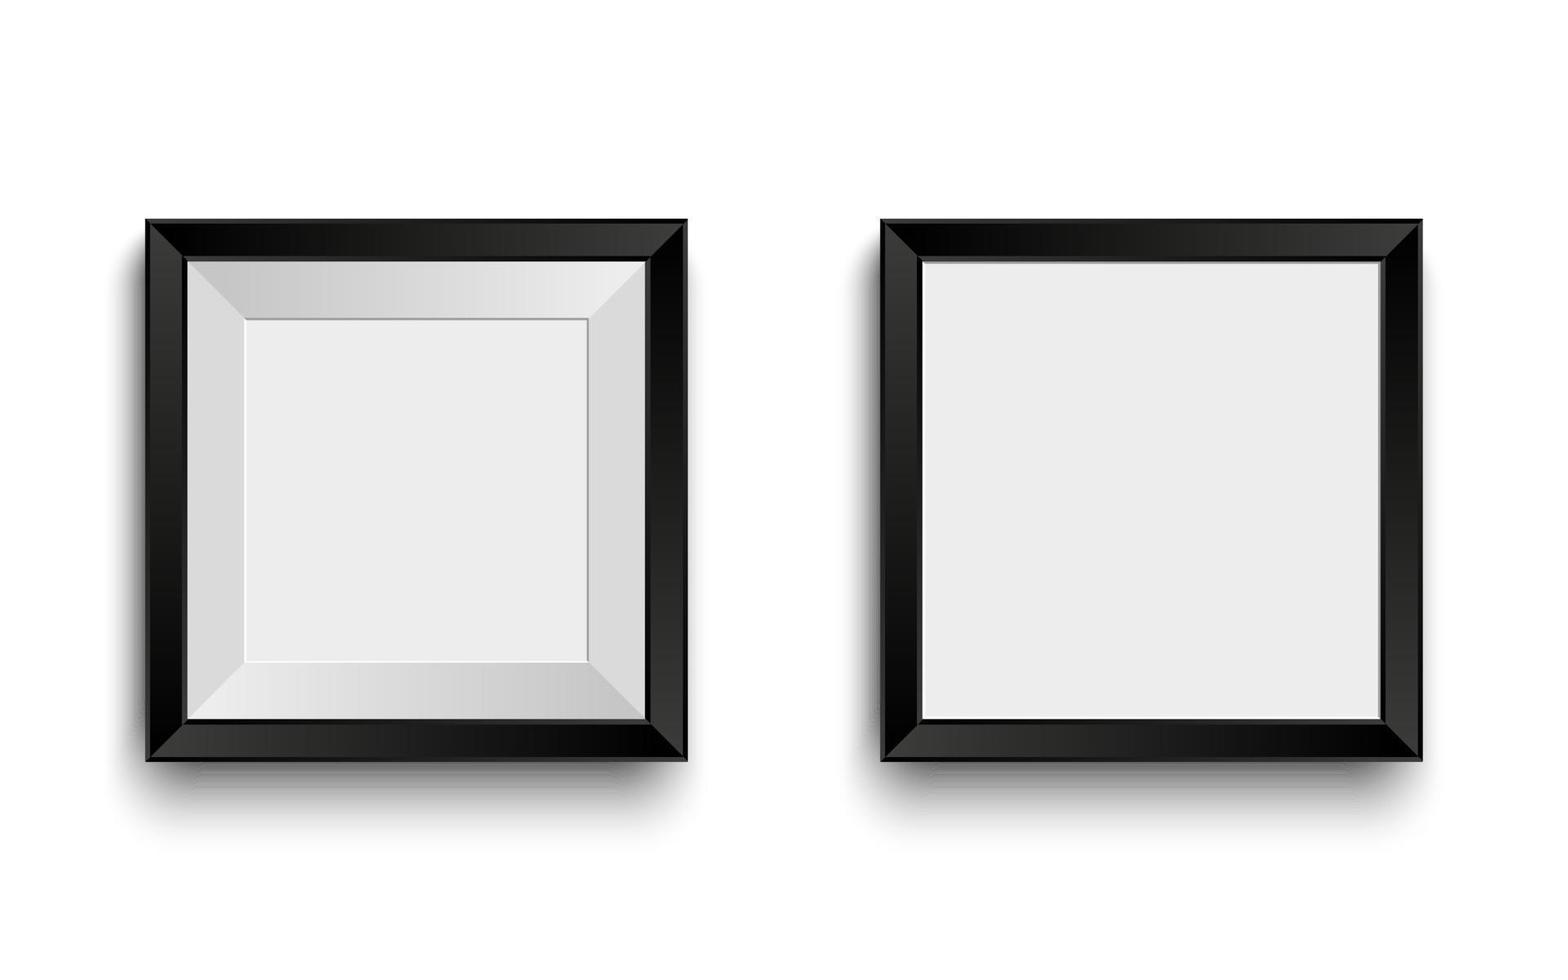 marcos negros realistas para su imagen o foto. plantilla de maqueta vectorial moderna. marco vacío para su diseño vector